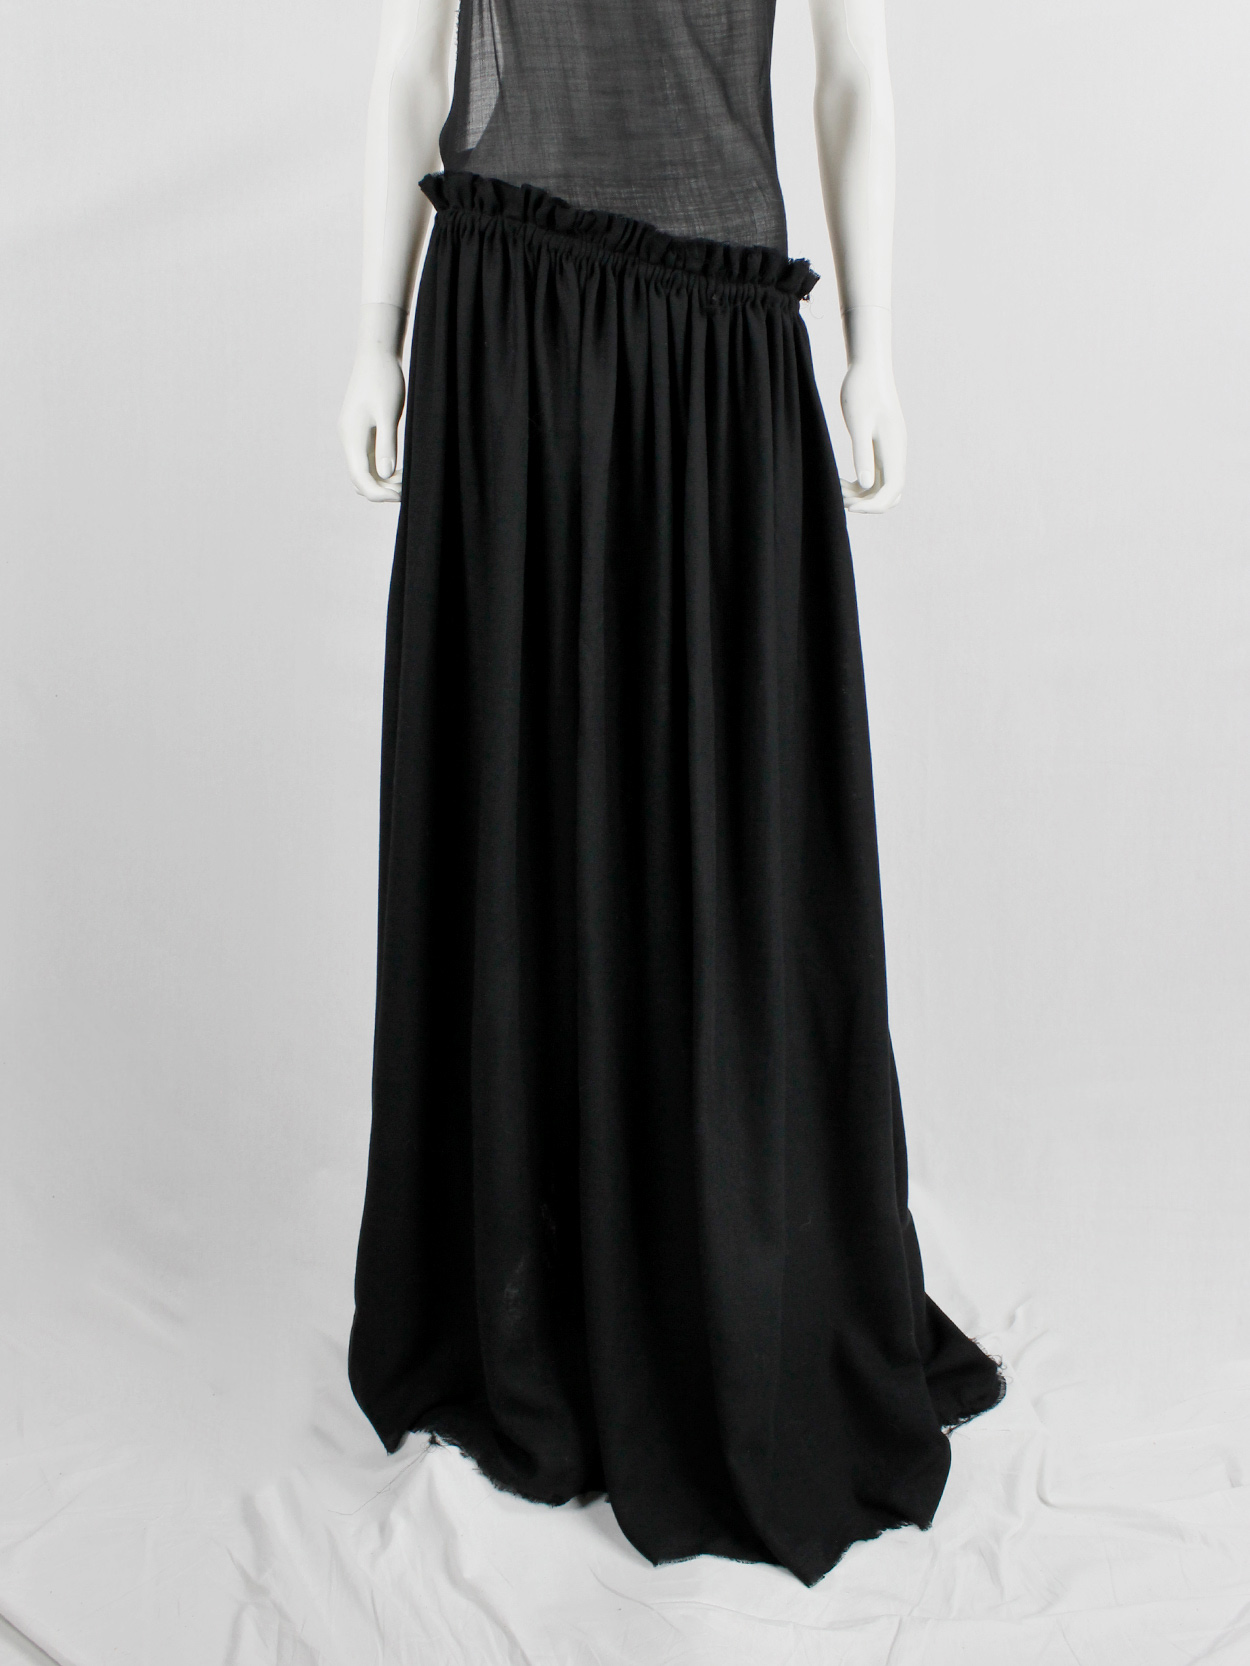 A.F. Vandevorst black backless maxi dress with gathered slanted skirt ...